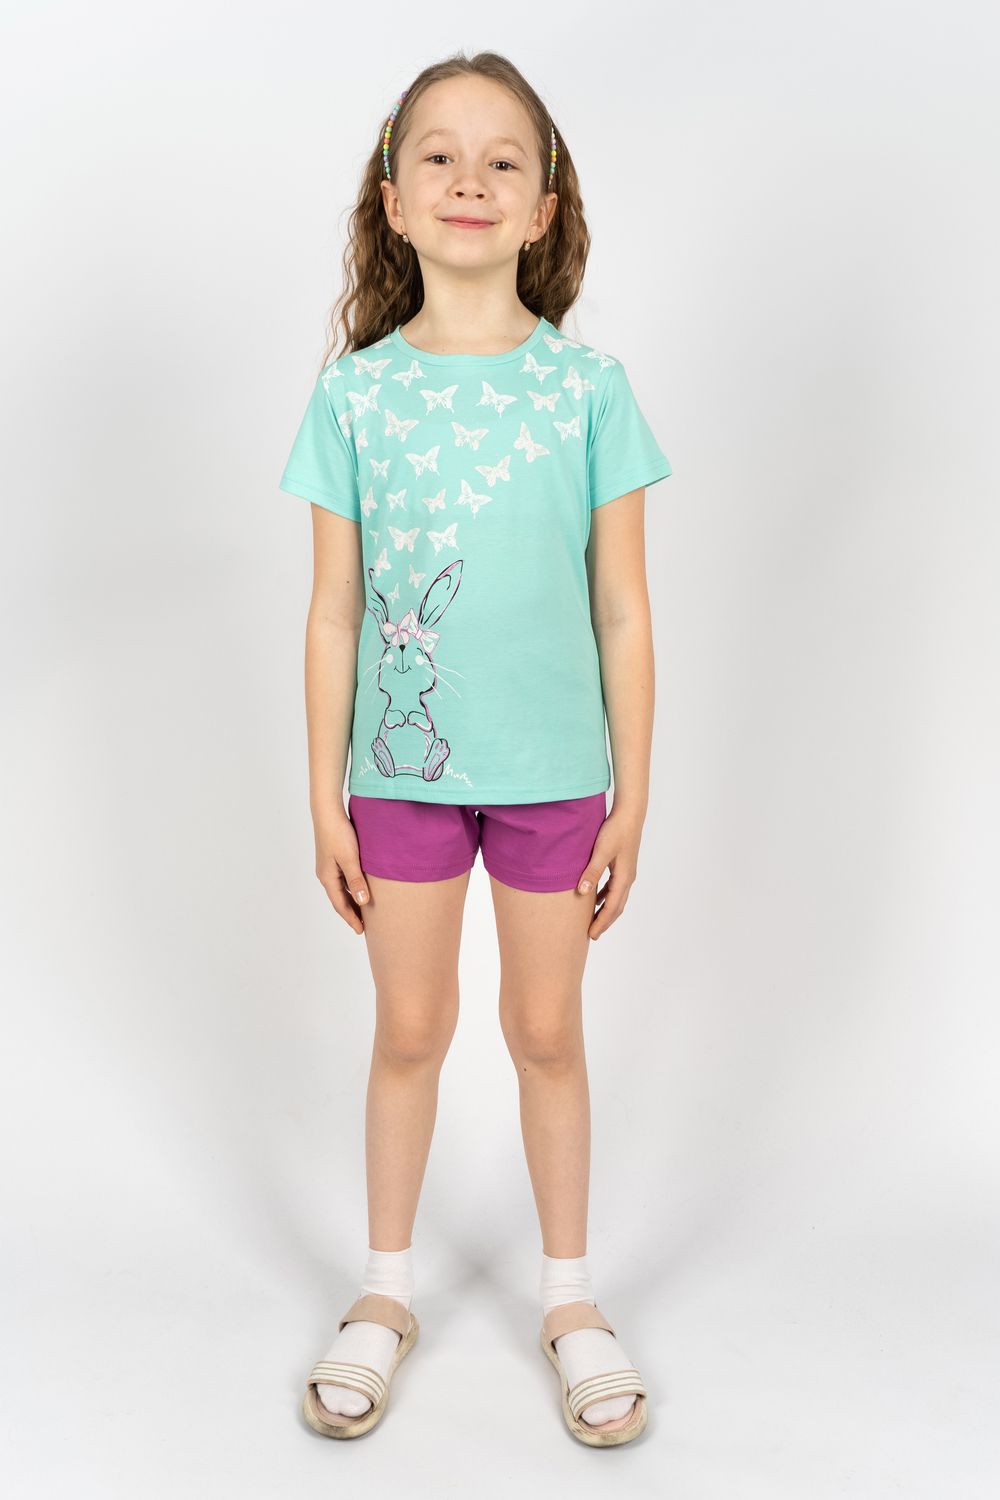 Комплект для девочки 41106 (футболка+ шорты) - мятный/лиловый